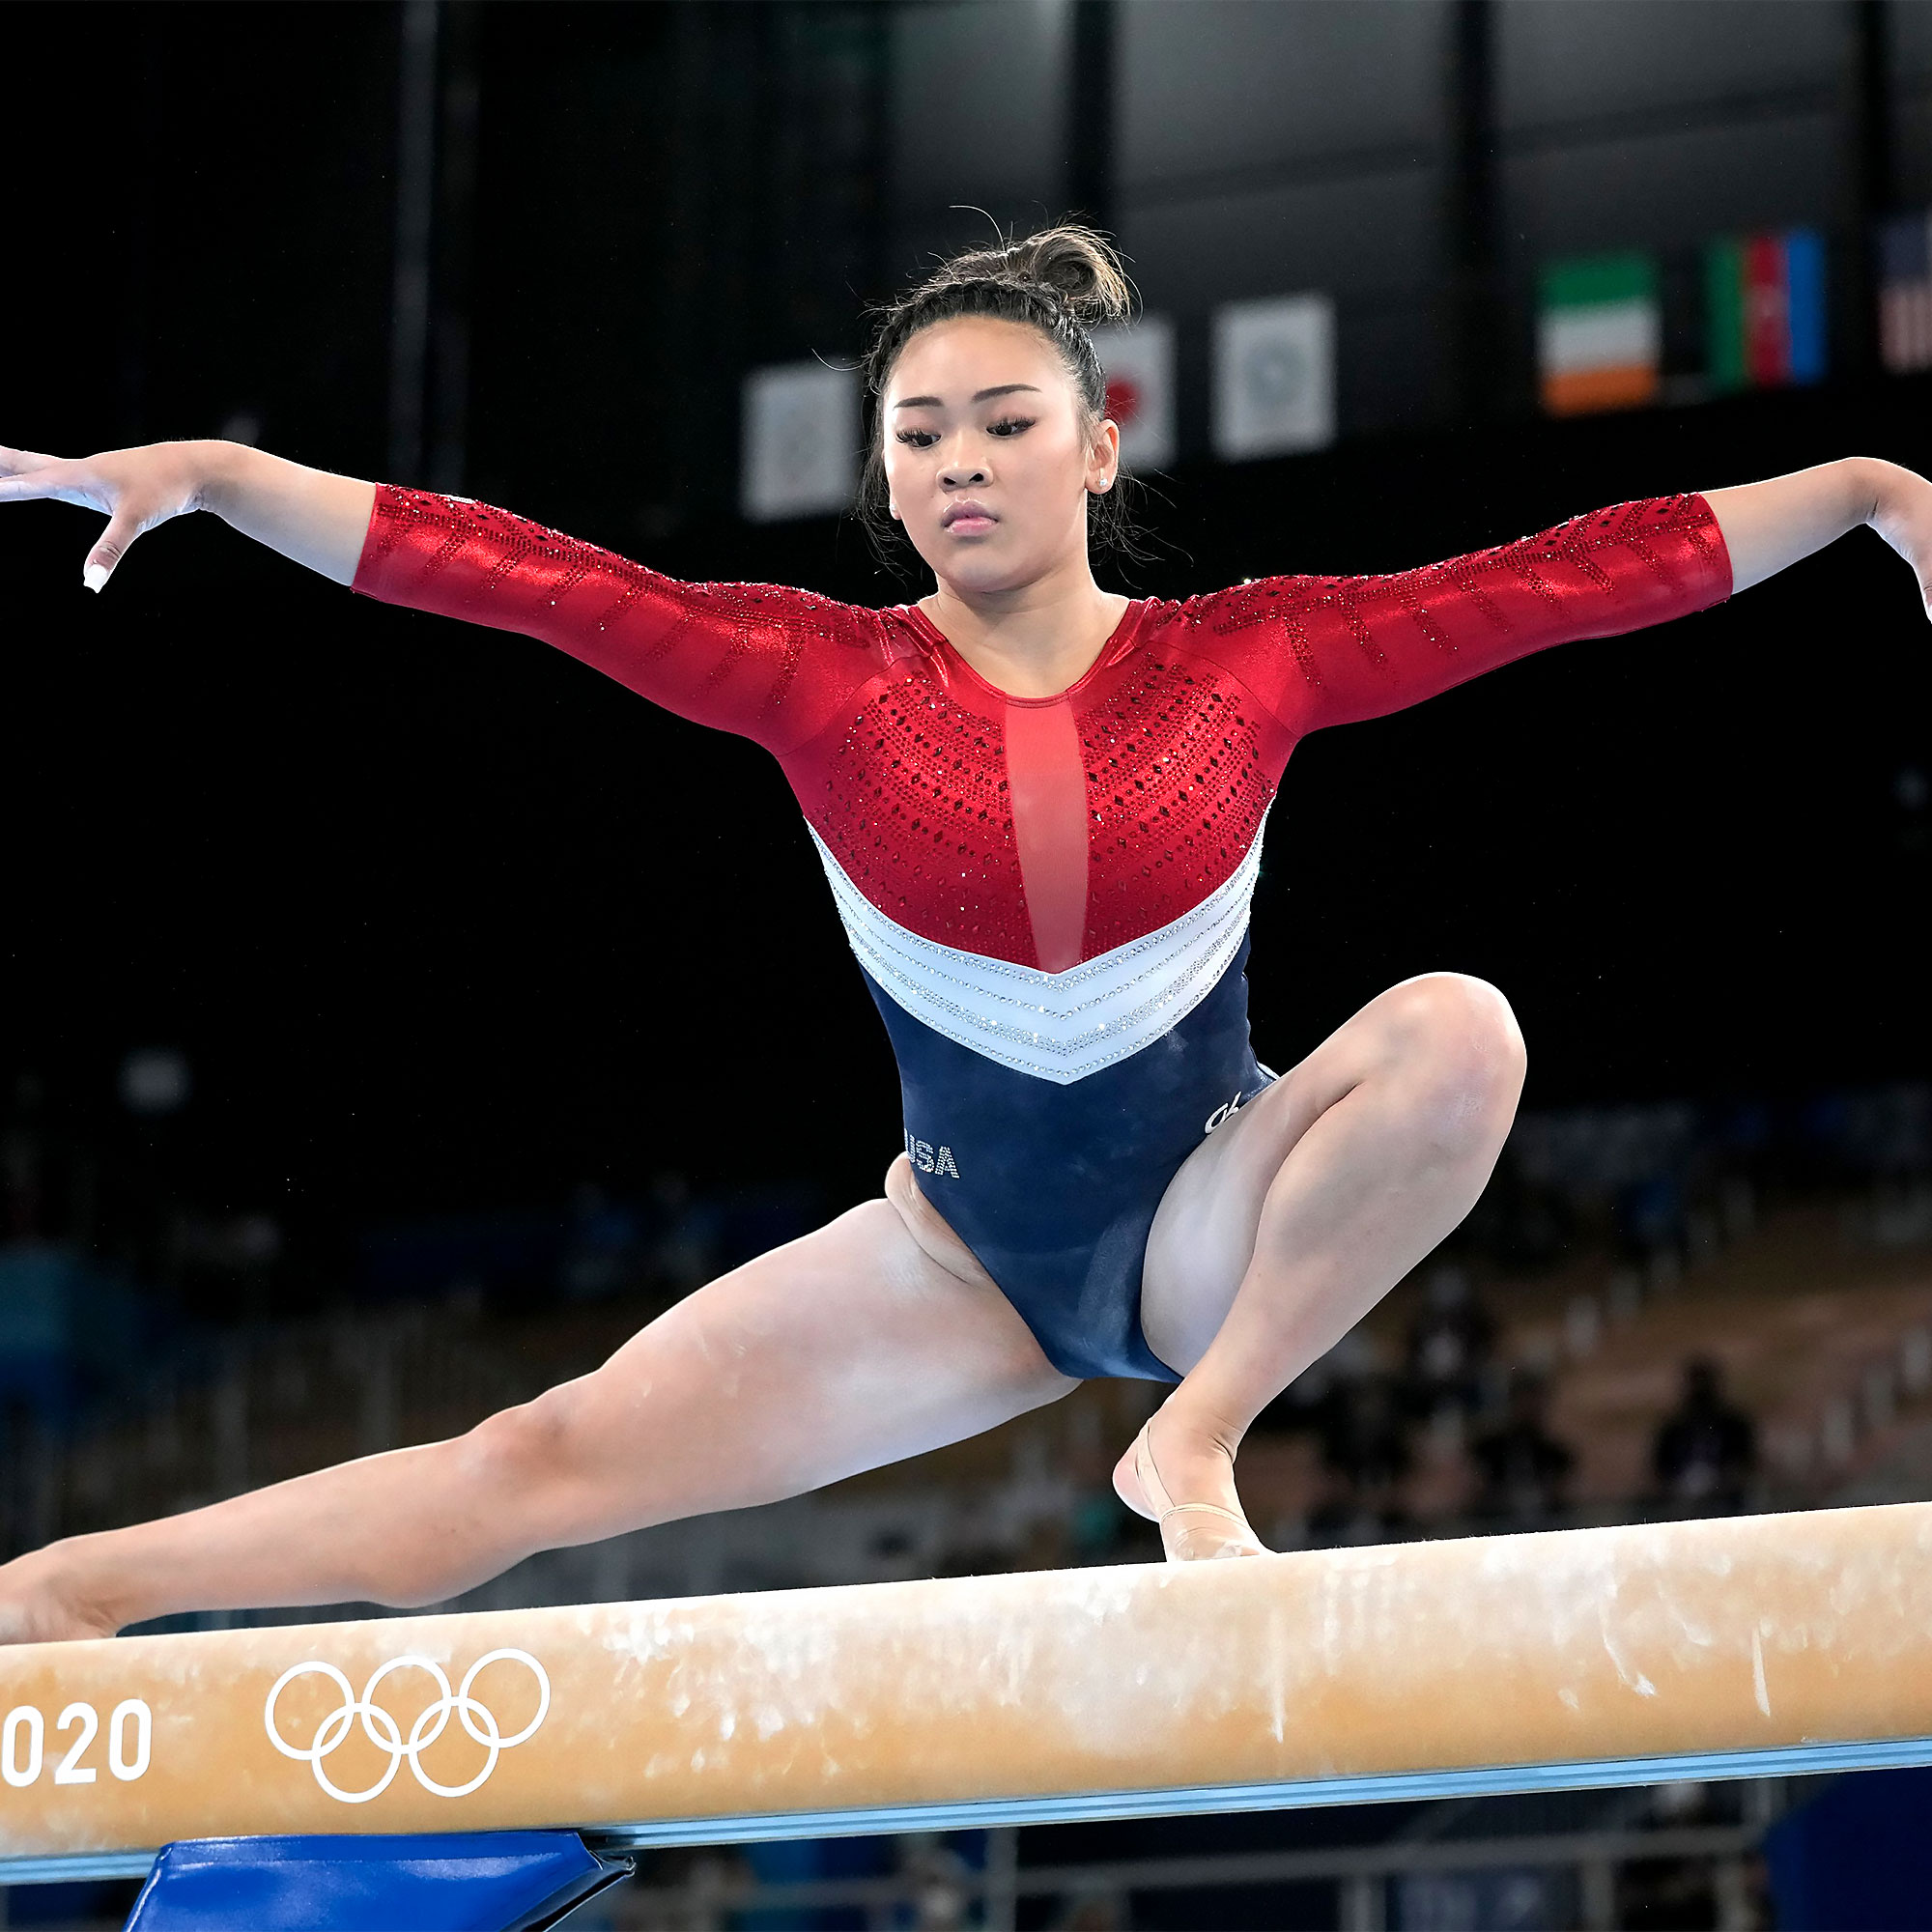 Suni Lee in Leotards Best Photos in Gymnastics Uniforms